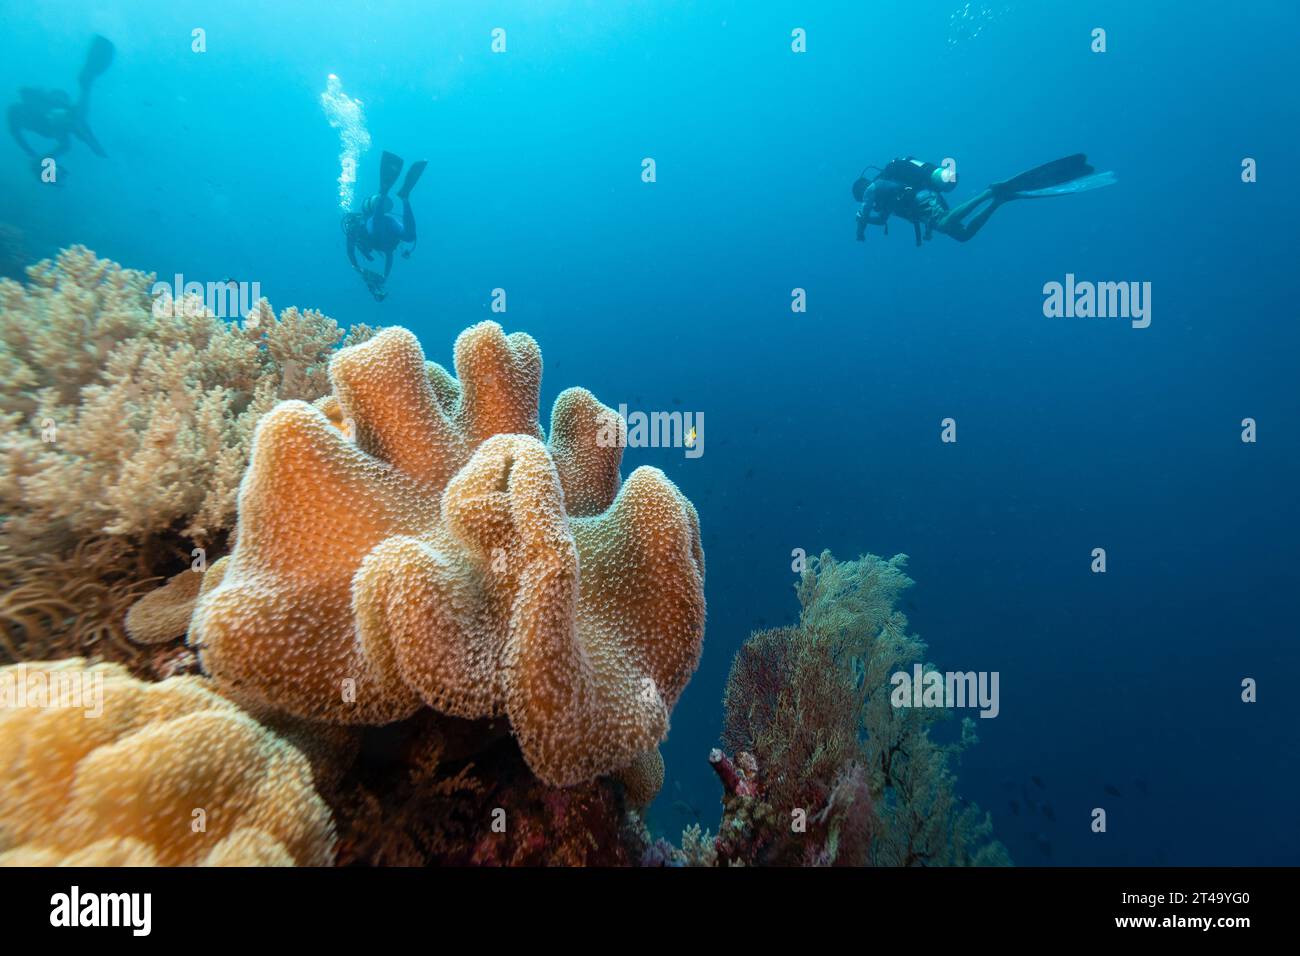 Groupe de plongeurs nageant devant un grand tabouret en cuir corail, Sarcophyton glaucum, affleurant alors qu'ils nagent dans les eaux tropicales bleues Banque D'Images